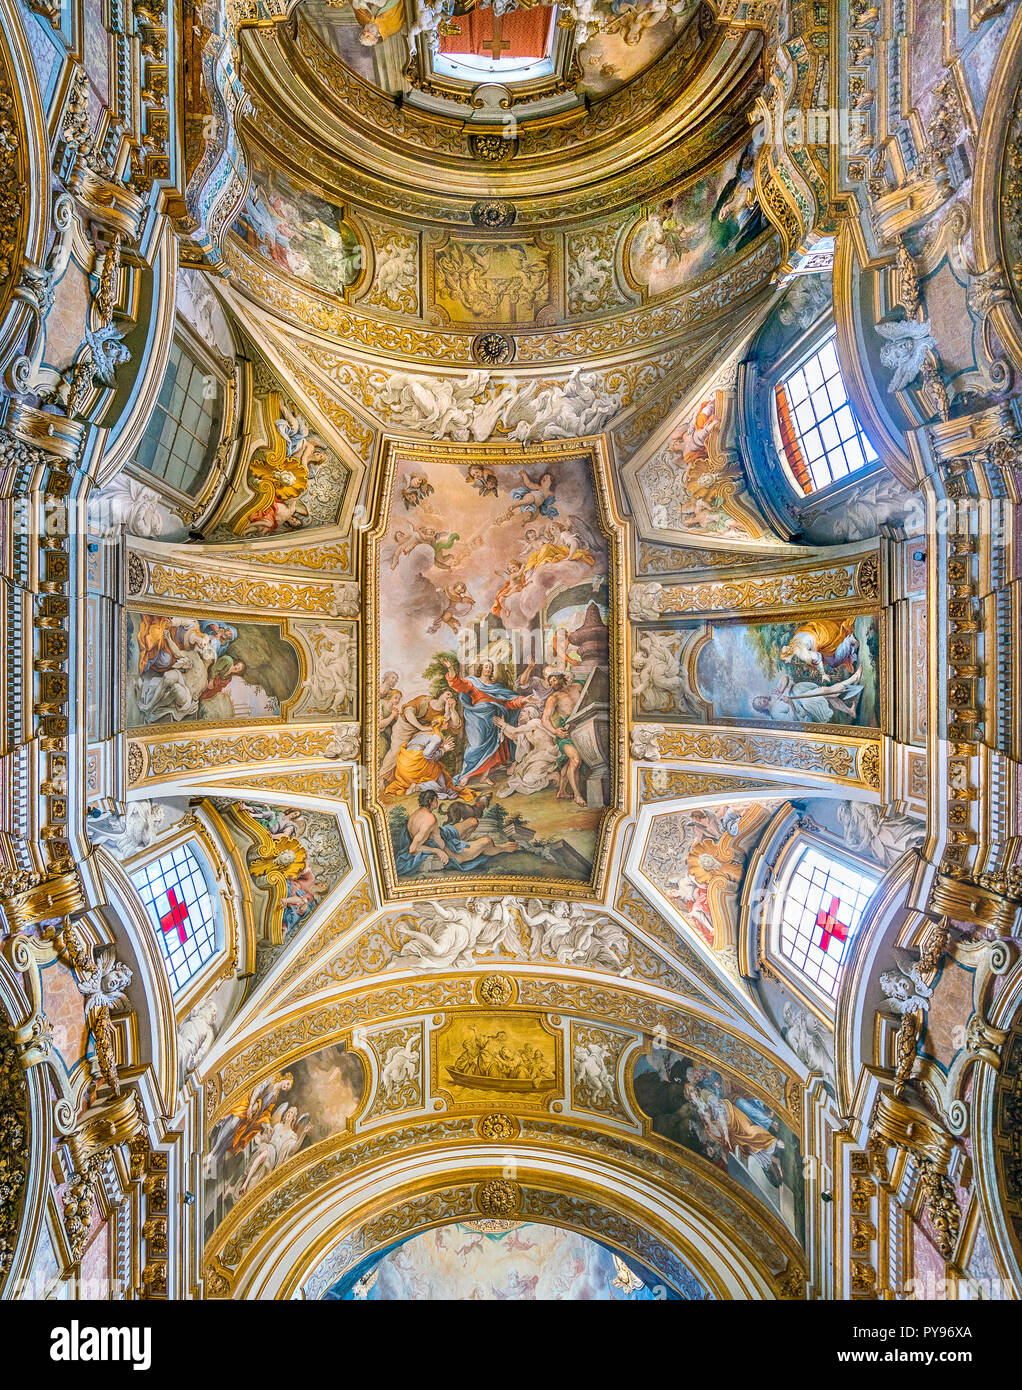 Fresco", die Auferweckung des Lazarus im Gebet seiner Schwester Maria' von Michelangelo Cerruti. Kirche Santa Maria Maddalena in Rom, Italien. Stockfoto